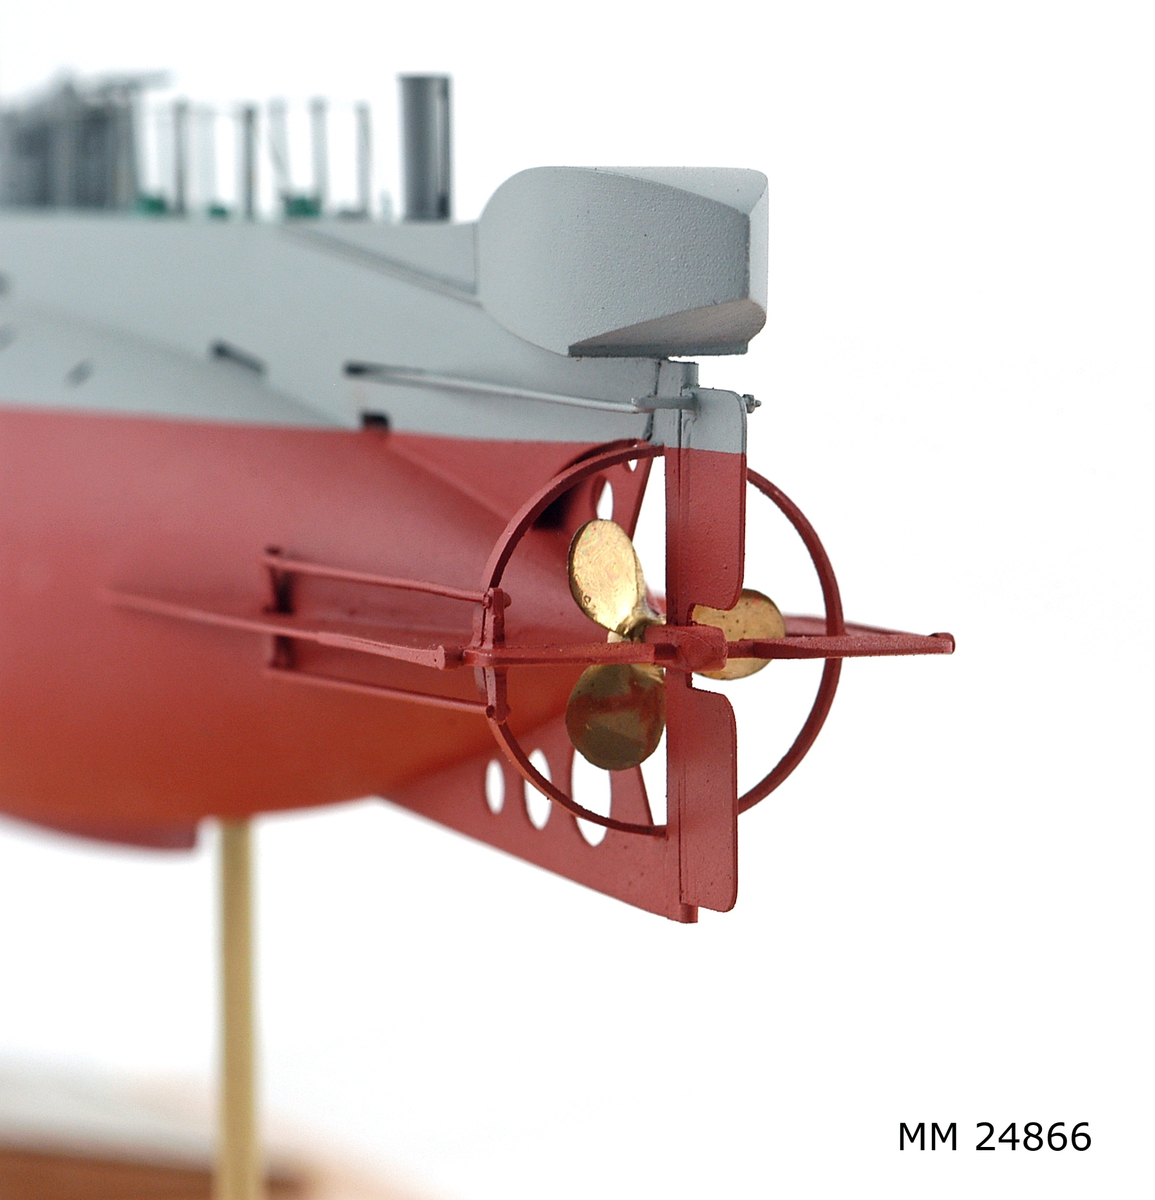 Ubåtsmodell Hajen i monter. Modell av alträ med detaljer av mässing, målad med cellulosafärg. Rött och grått skrov. Monter av plexiglas på träplatta. Mässingsbricka i montern med uppgifter om modellen.